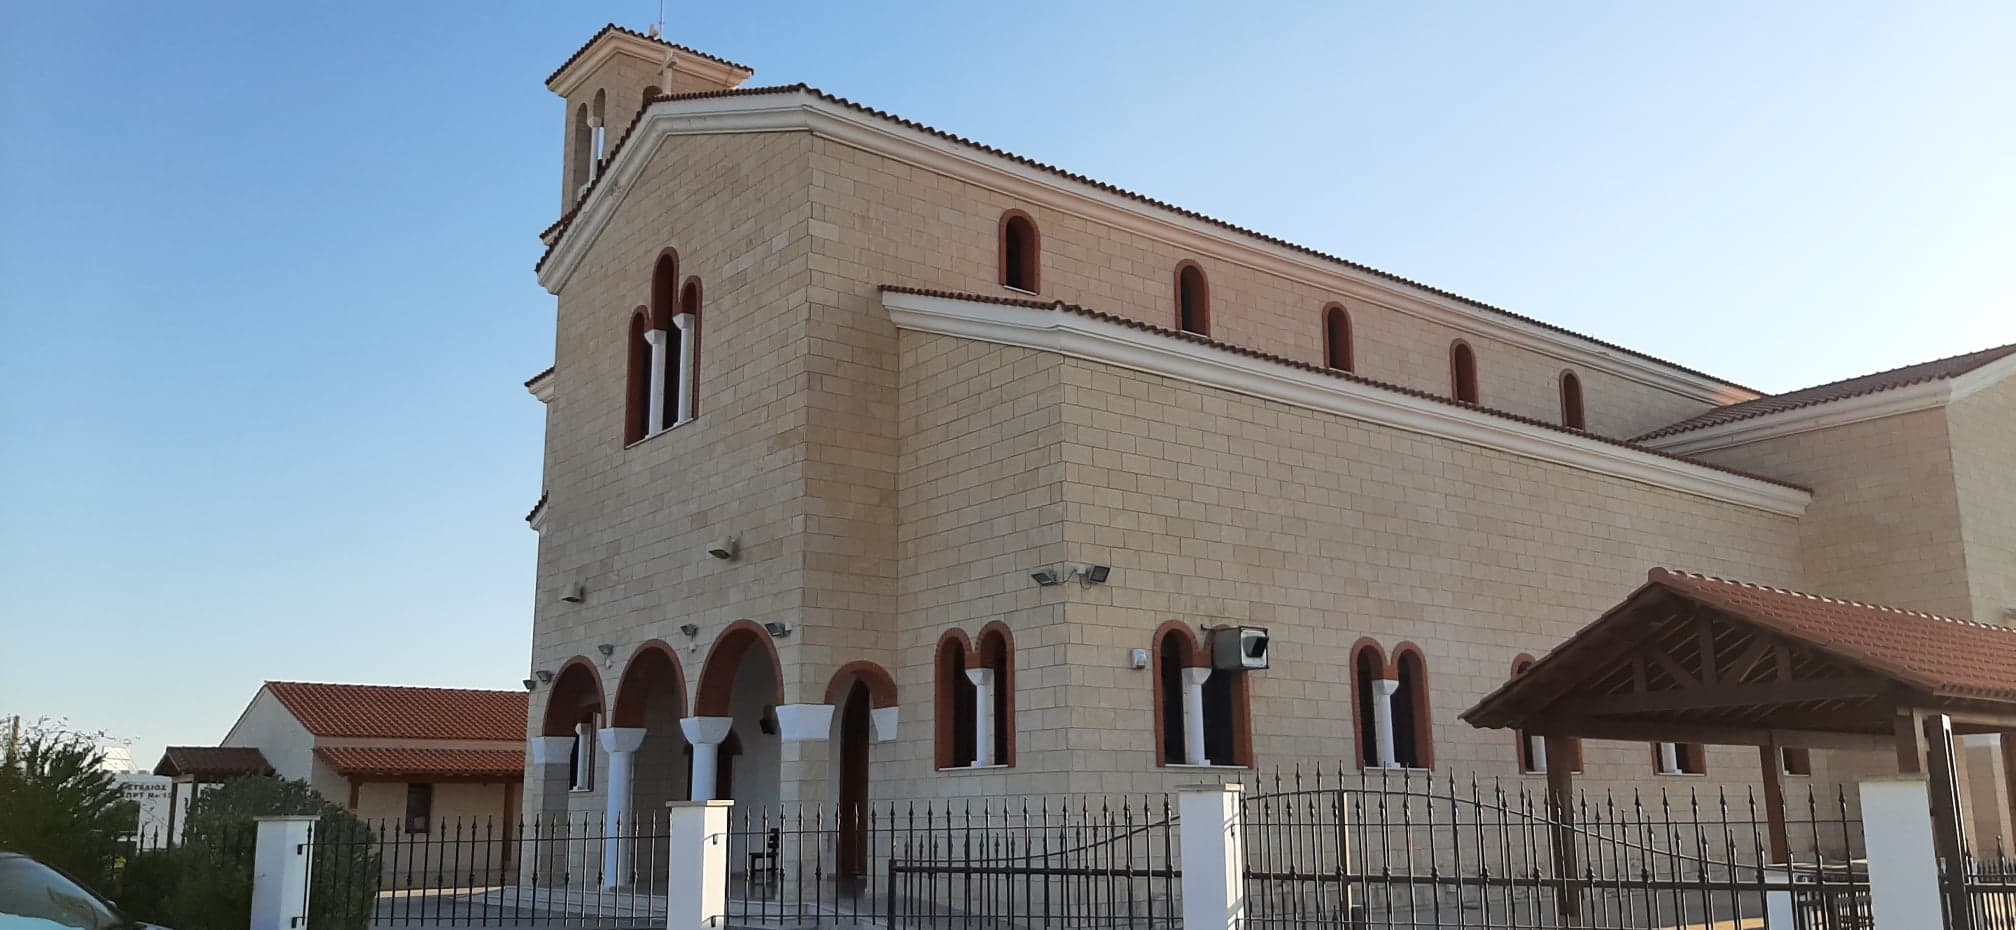 Στα Λιβάδια Λάρνακας και συγκεκριμένα στον Ιερό Ναό Τριών Ιεραρχών στο συνοικισμό Λιβαδιών, θα βρίσκονται για προσκύνημα τα ιερά λείψανα του Αγίου Εφραίμ